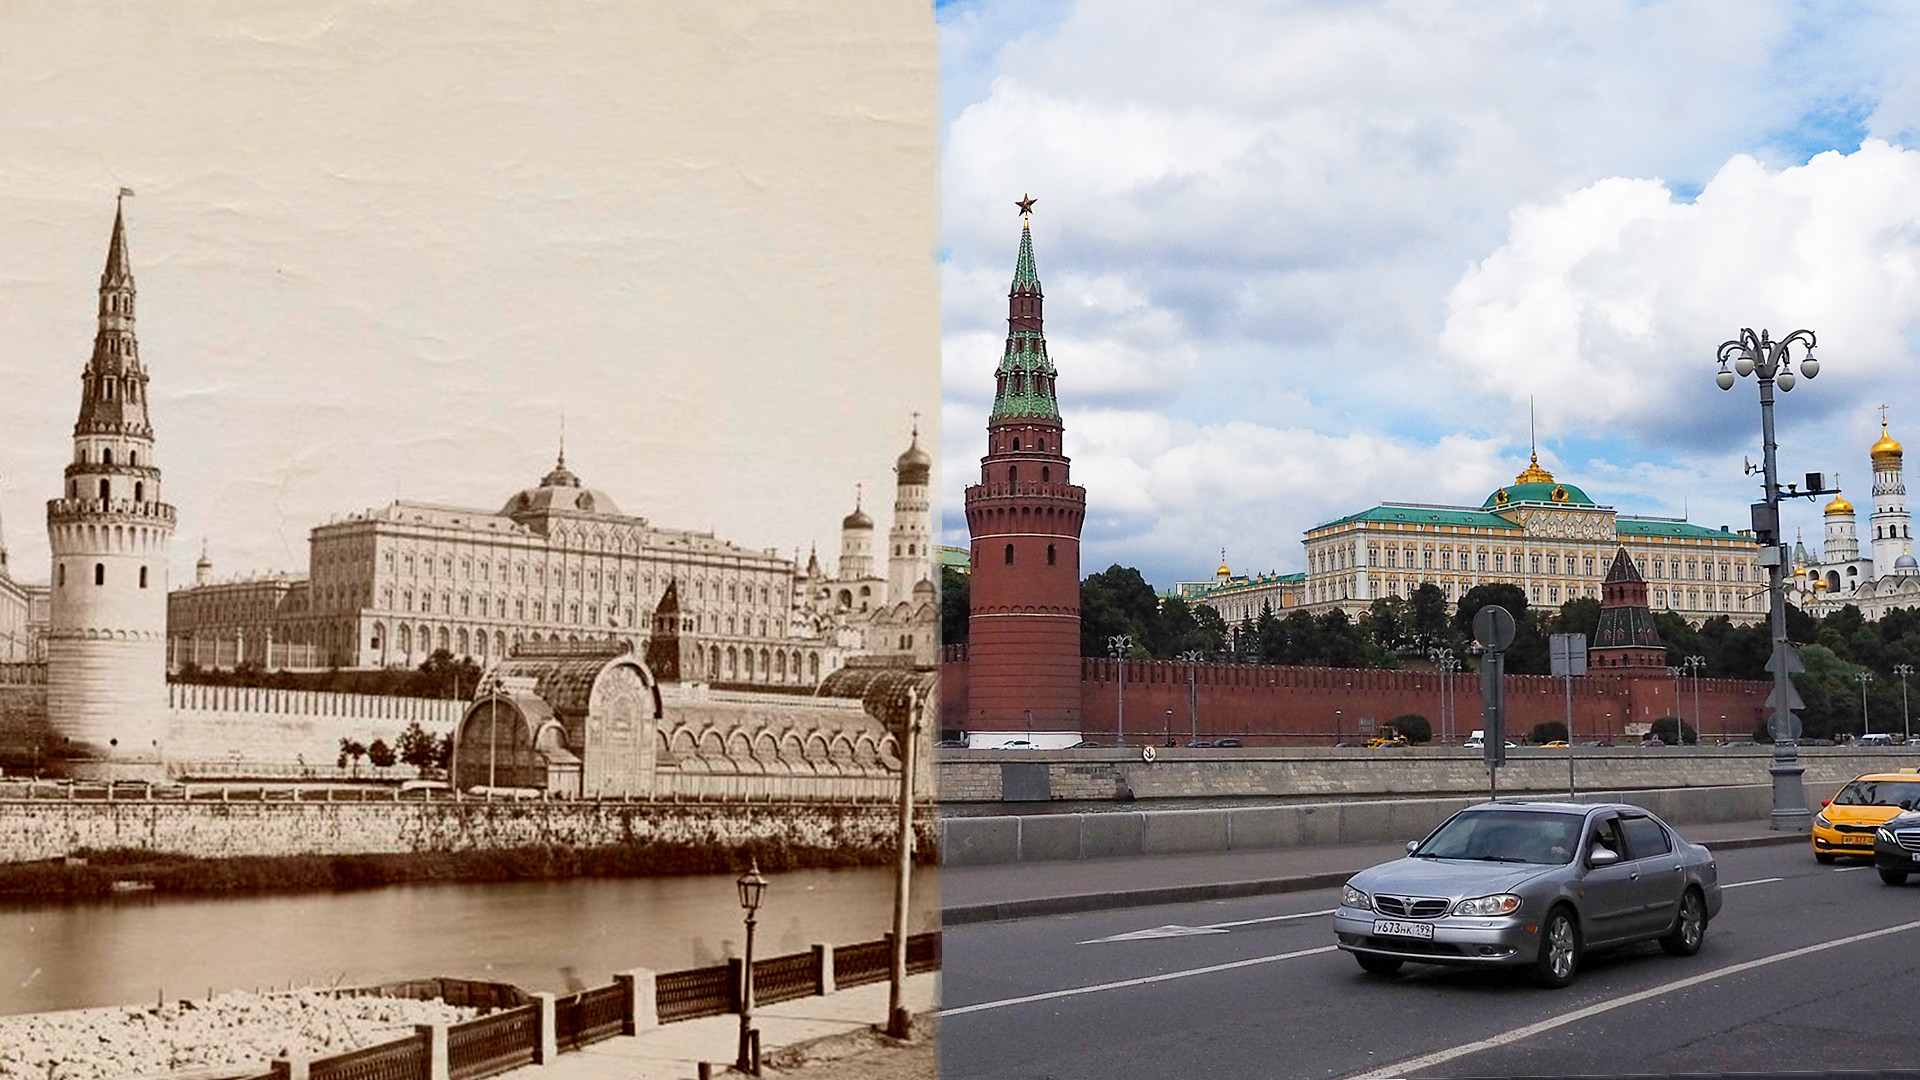 Москва стала столицей ссср в году